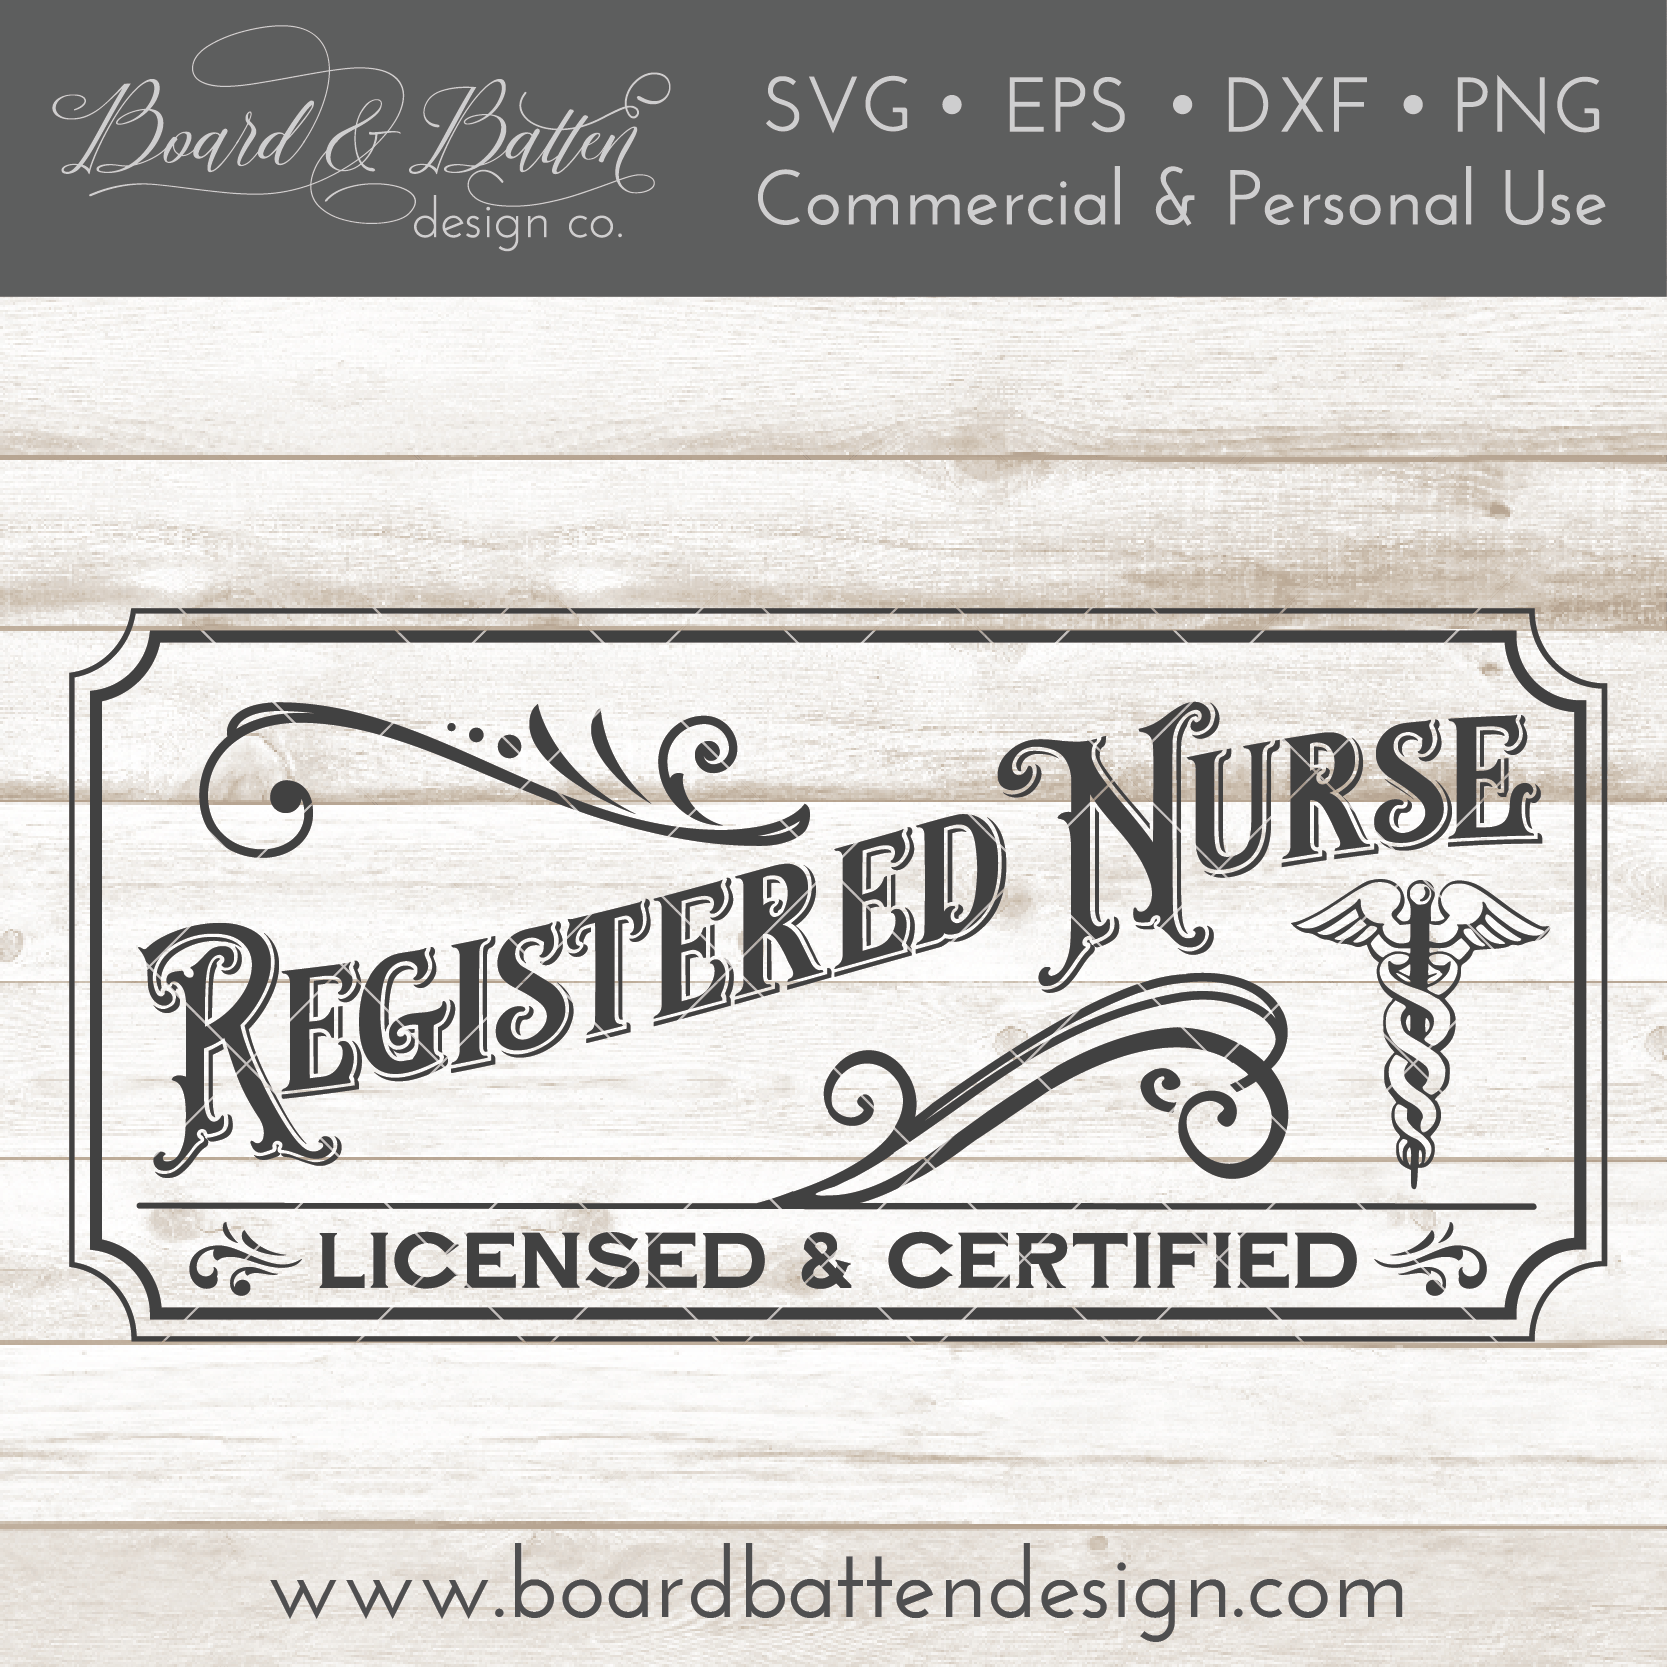 Download Vintage Registered Nurse Sign SVG File - Board & Batten ...